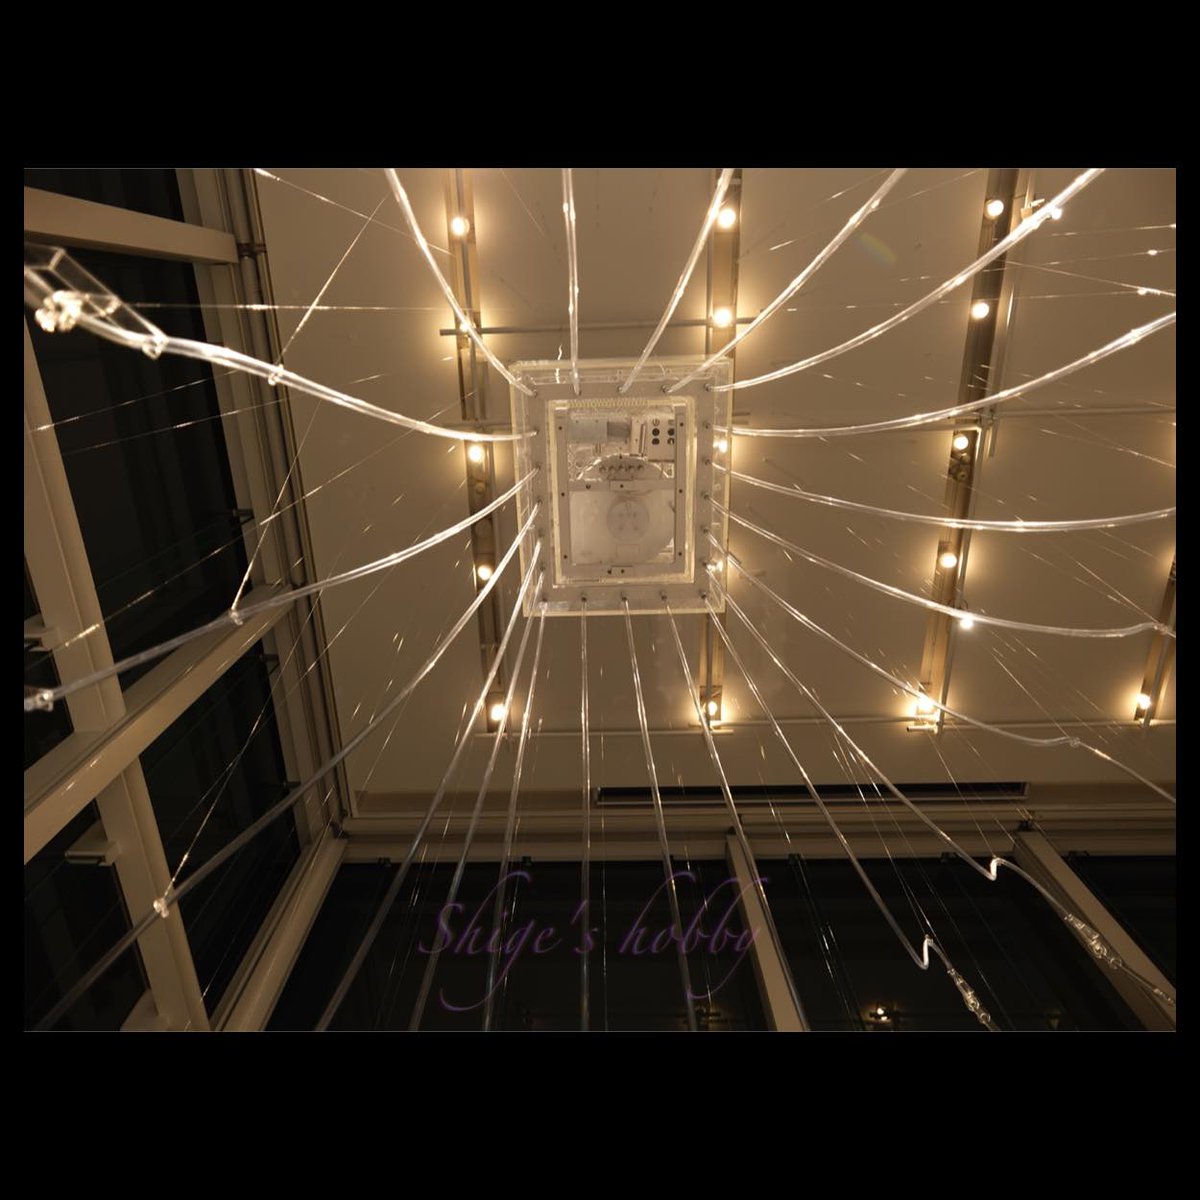 L>espace)(…,
Cerith Wyn Evans’s
2024.1.8まで

夜のエバンス作品とてもよい
室内照明はもう少しくらい方がこのみかも
20時まで鑑賞できるので夜間はお勧め

#EspaceLV
#CollectionFLV
#FoundationLouisVuitton